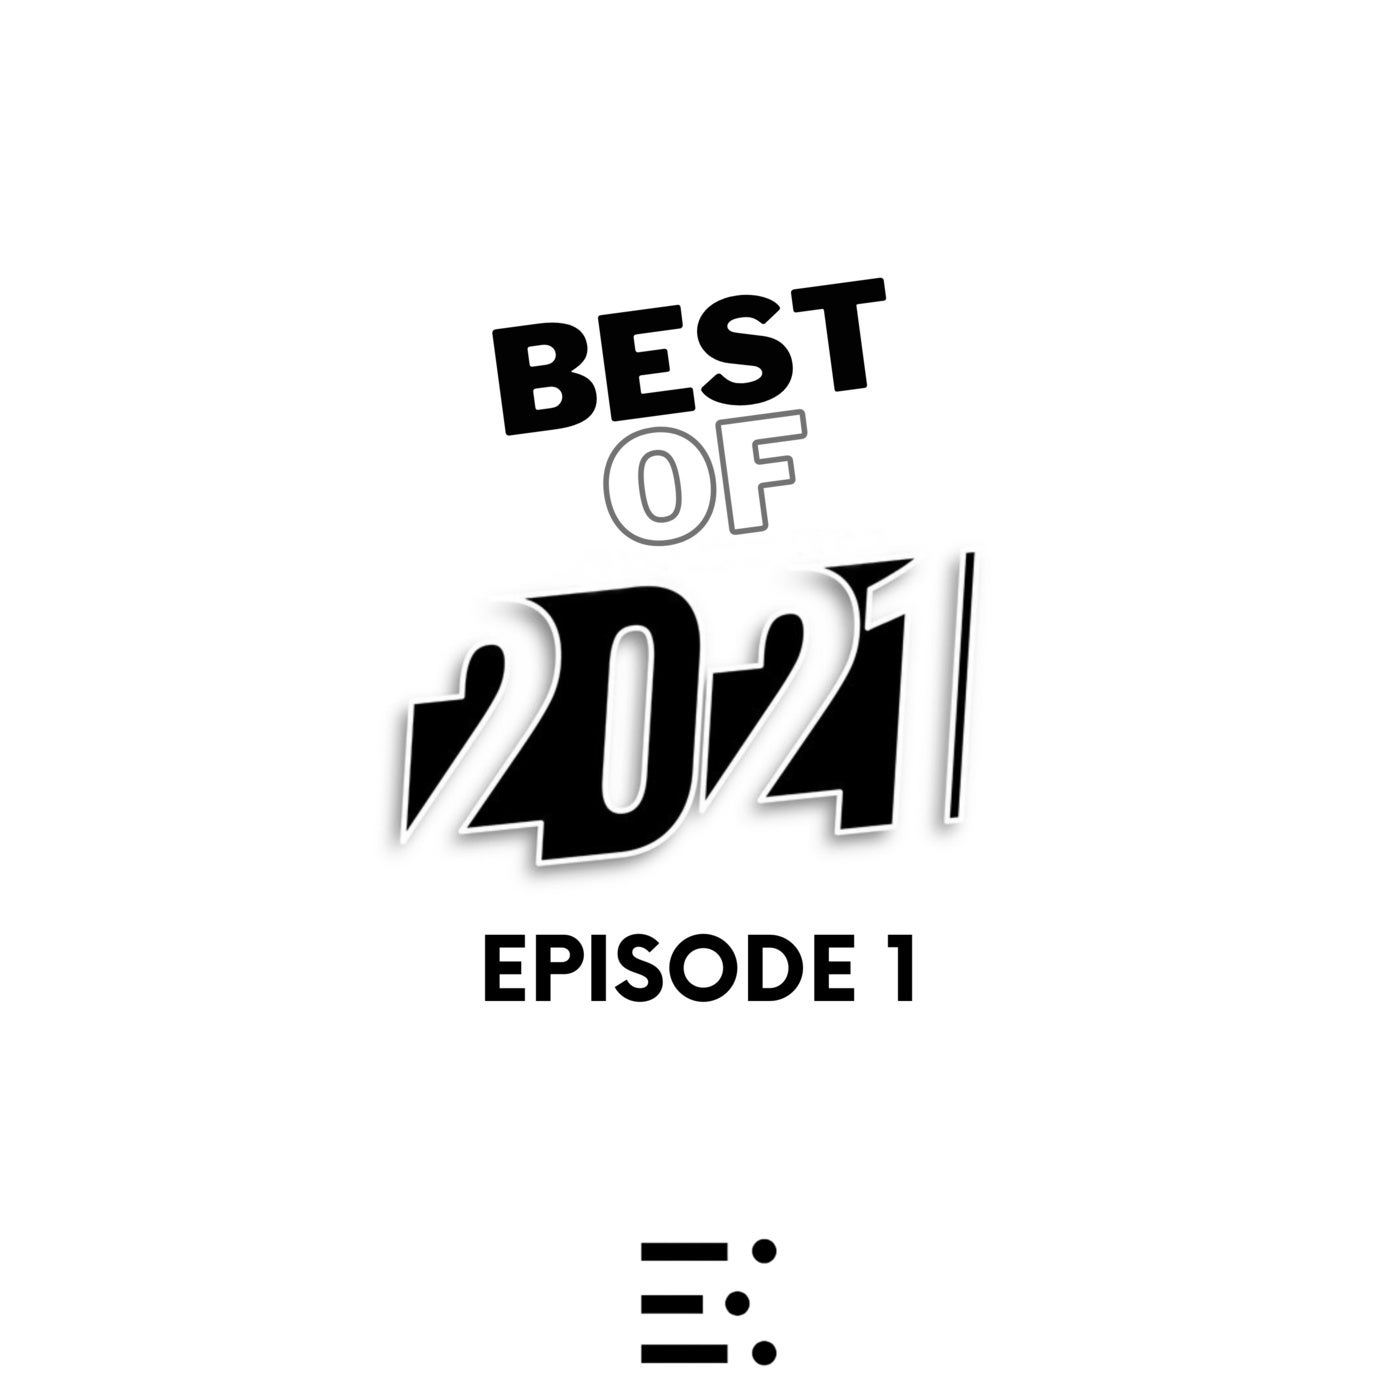 Best of 2021 Episode 1